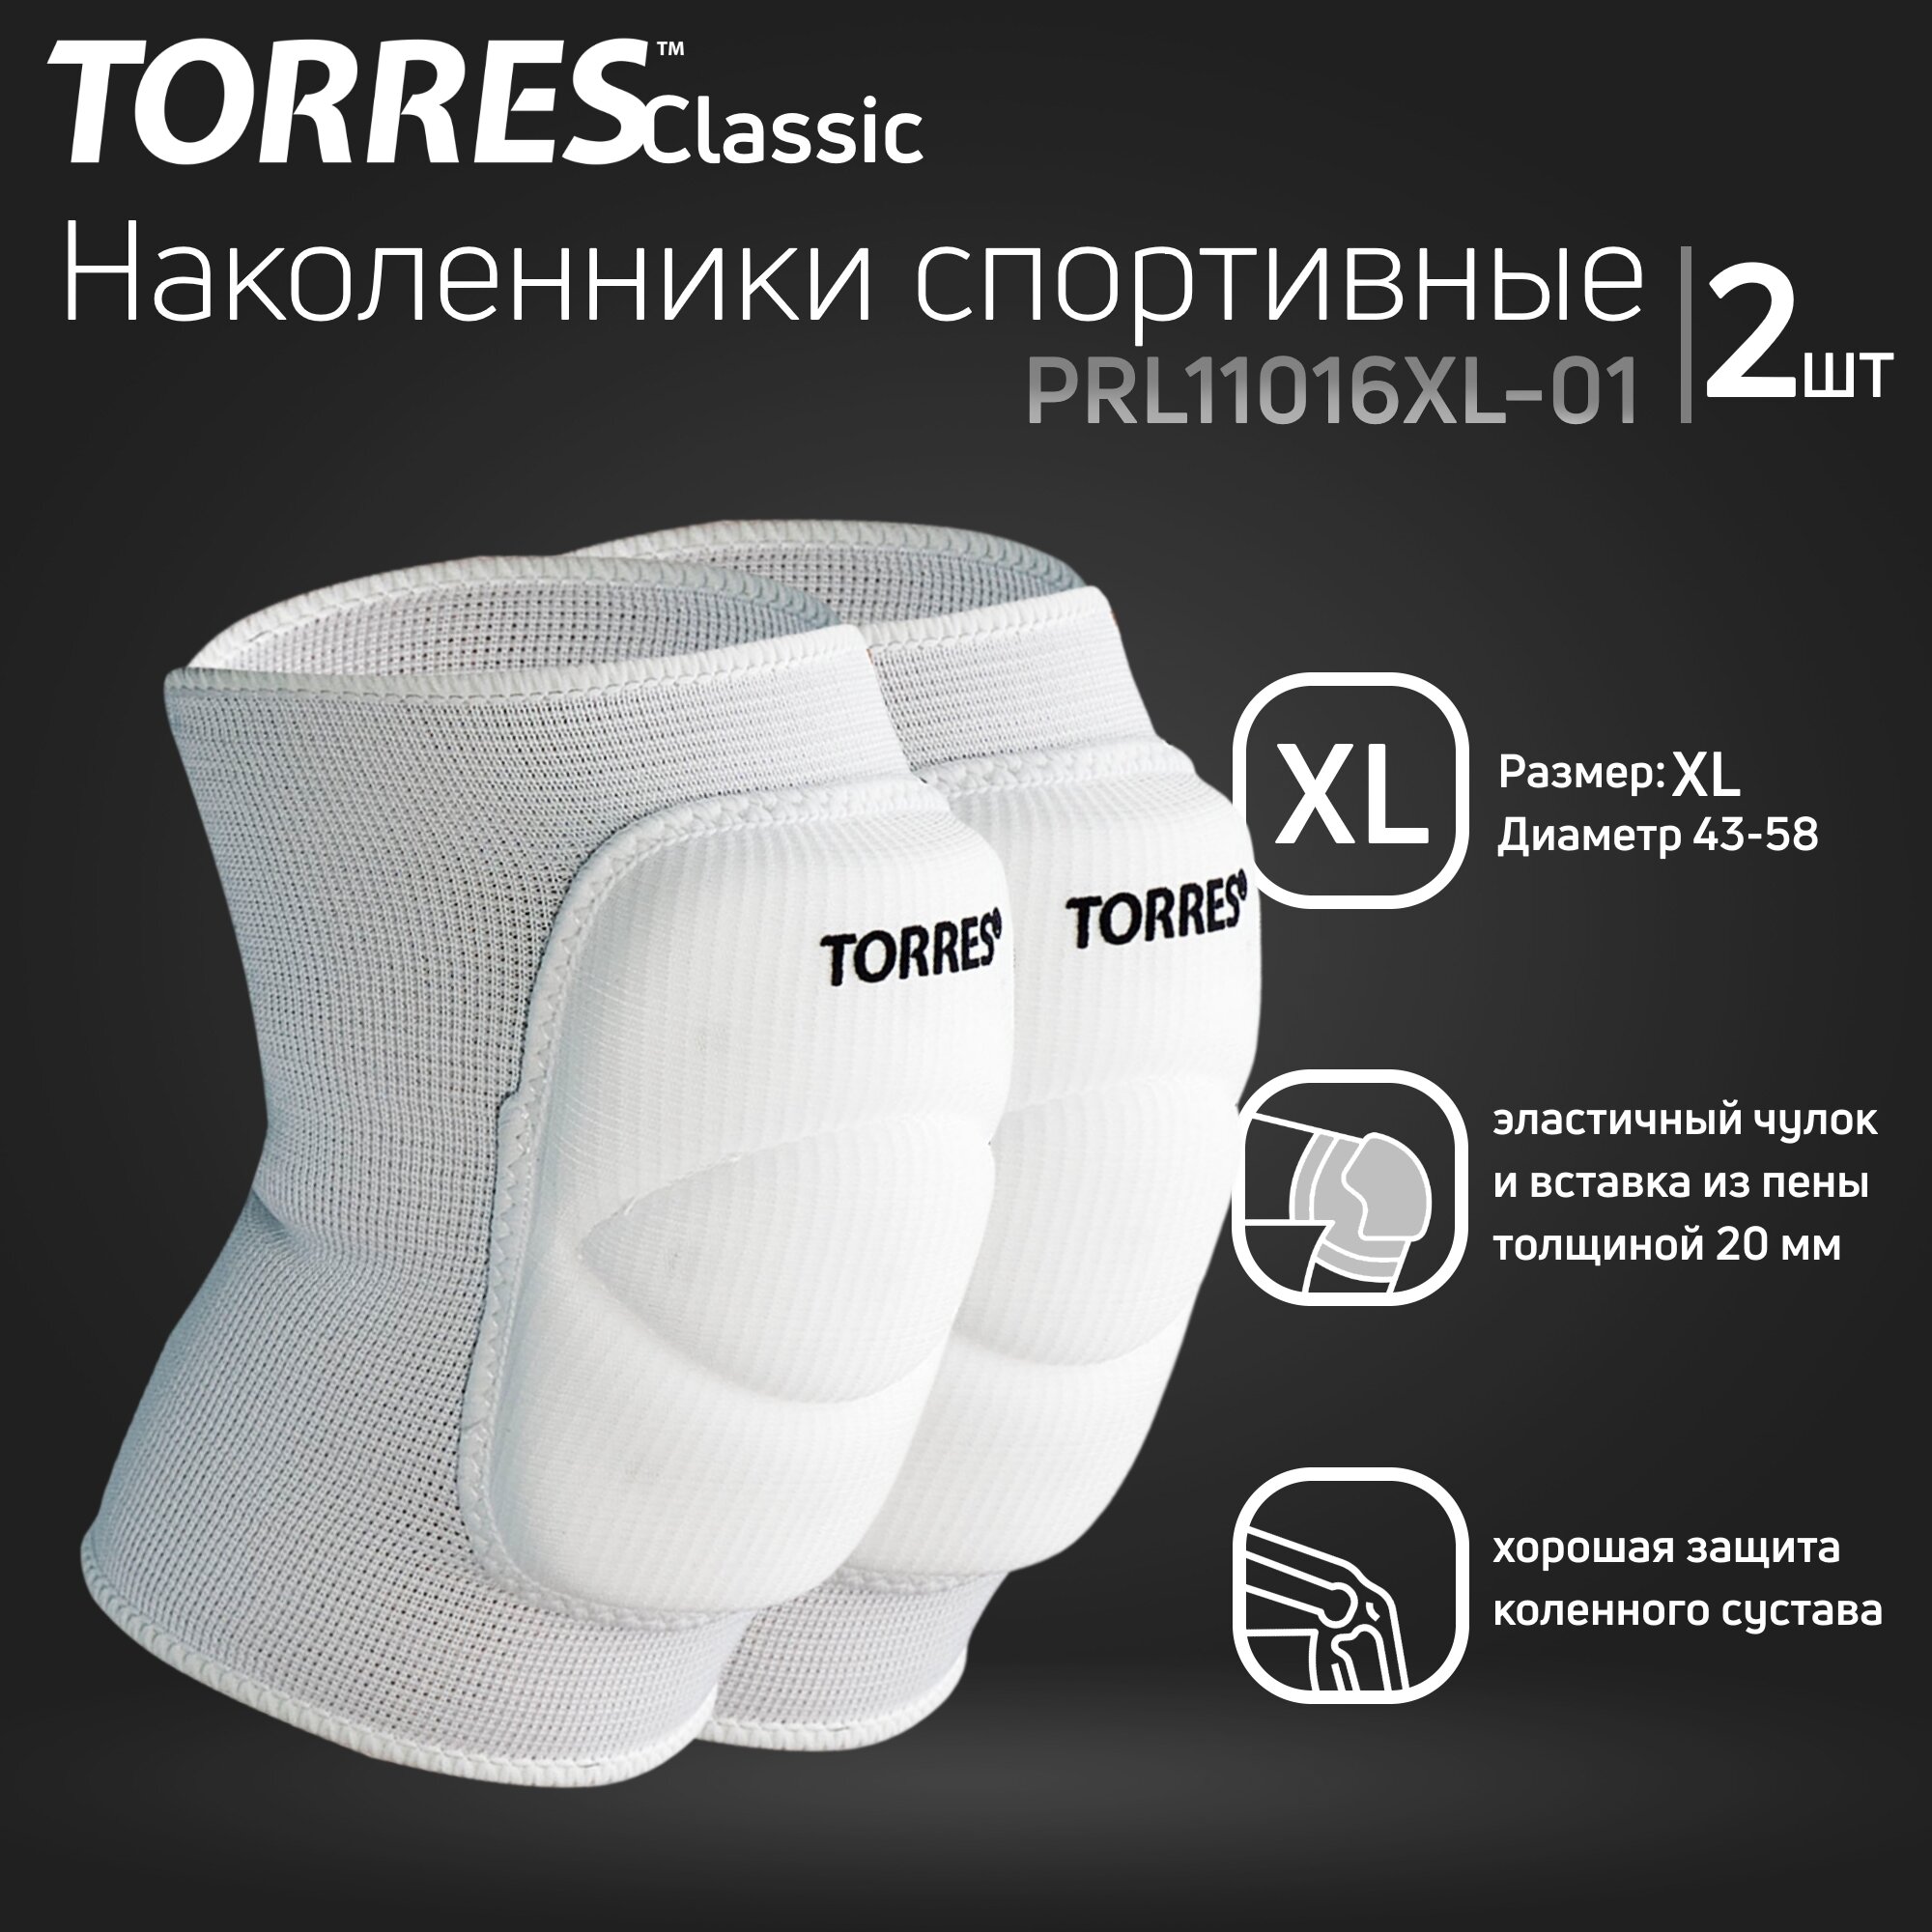 Наколенники спортивные TORRES Classic PRL11016XL-01, размер XL, белые